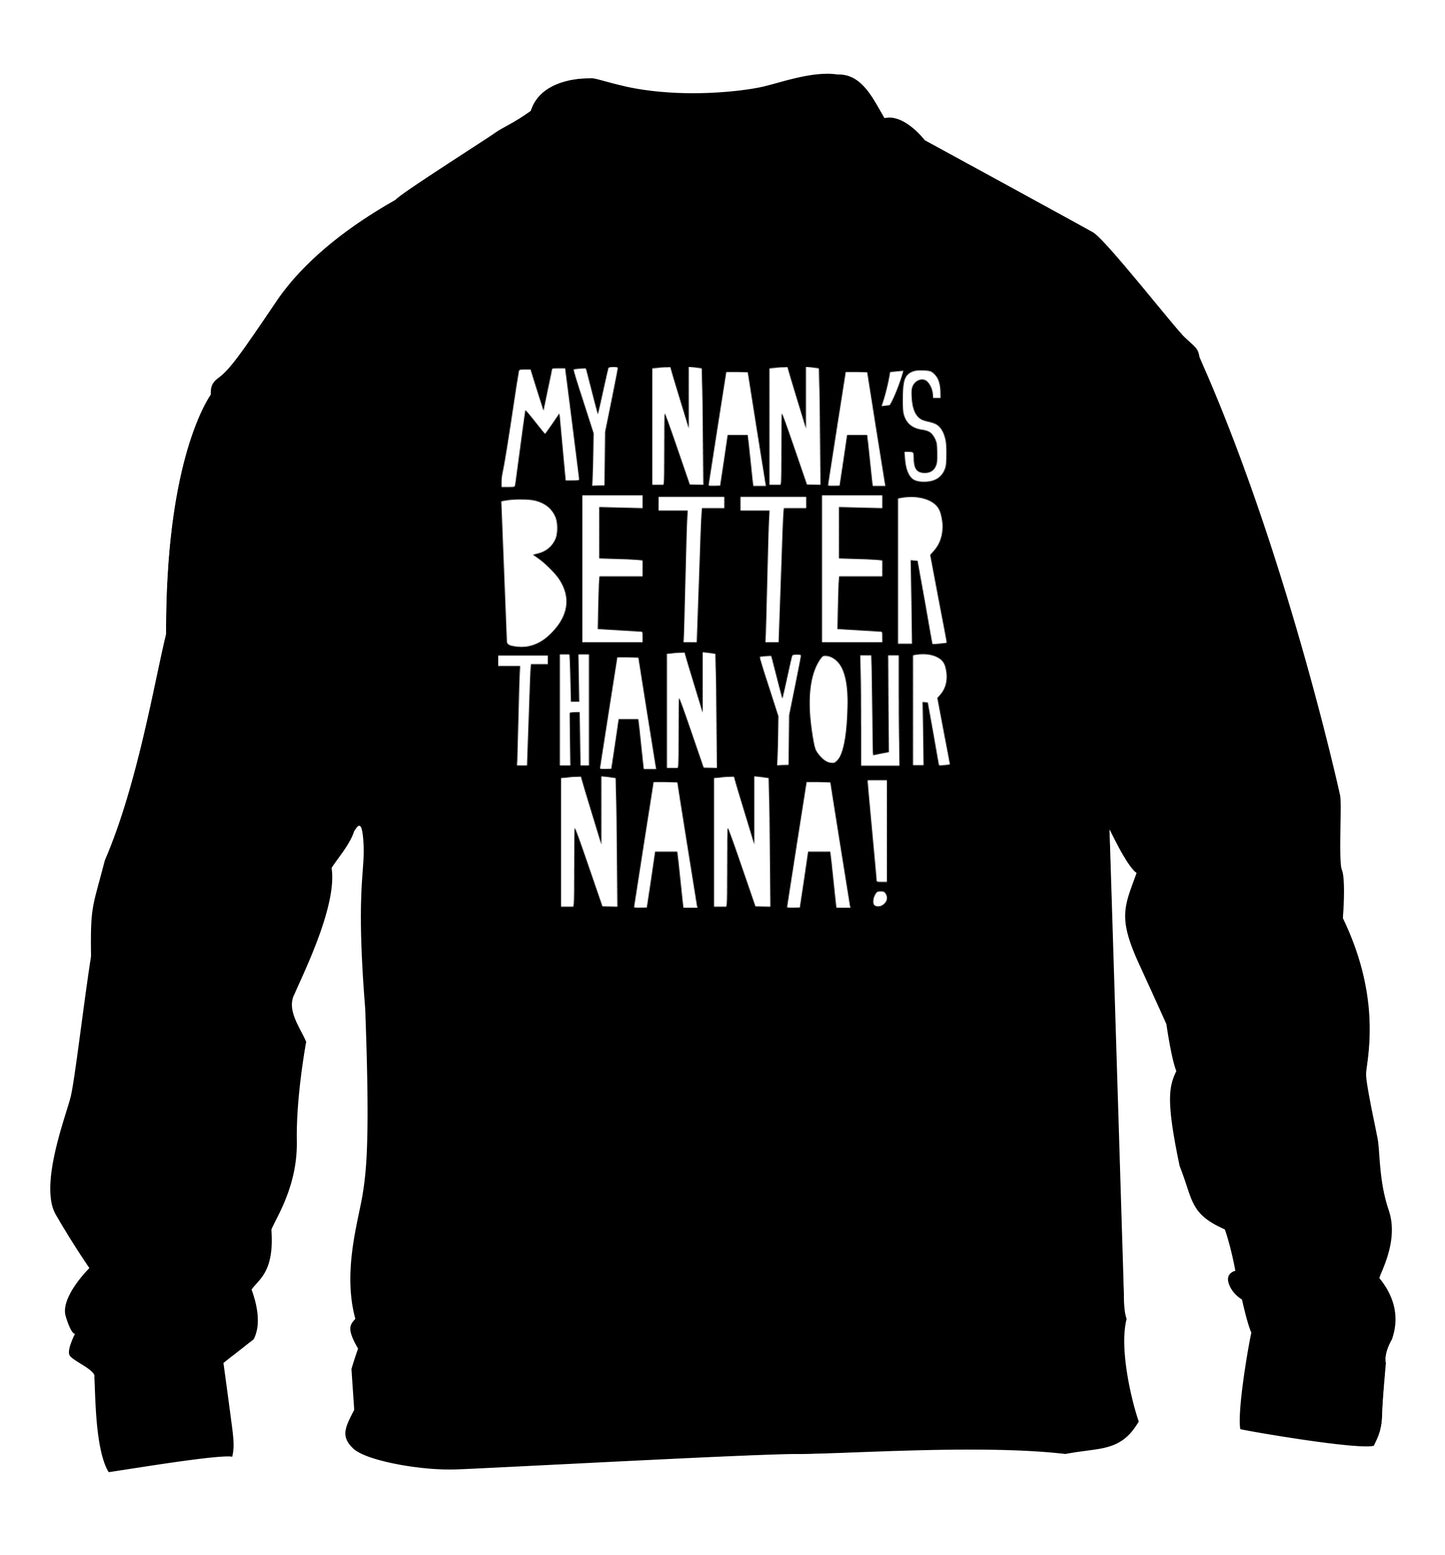 My nana's better than your nana children's black sweater 12-13 Years